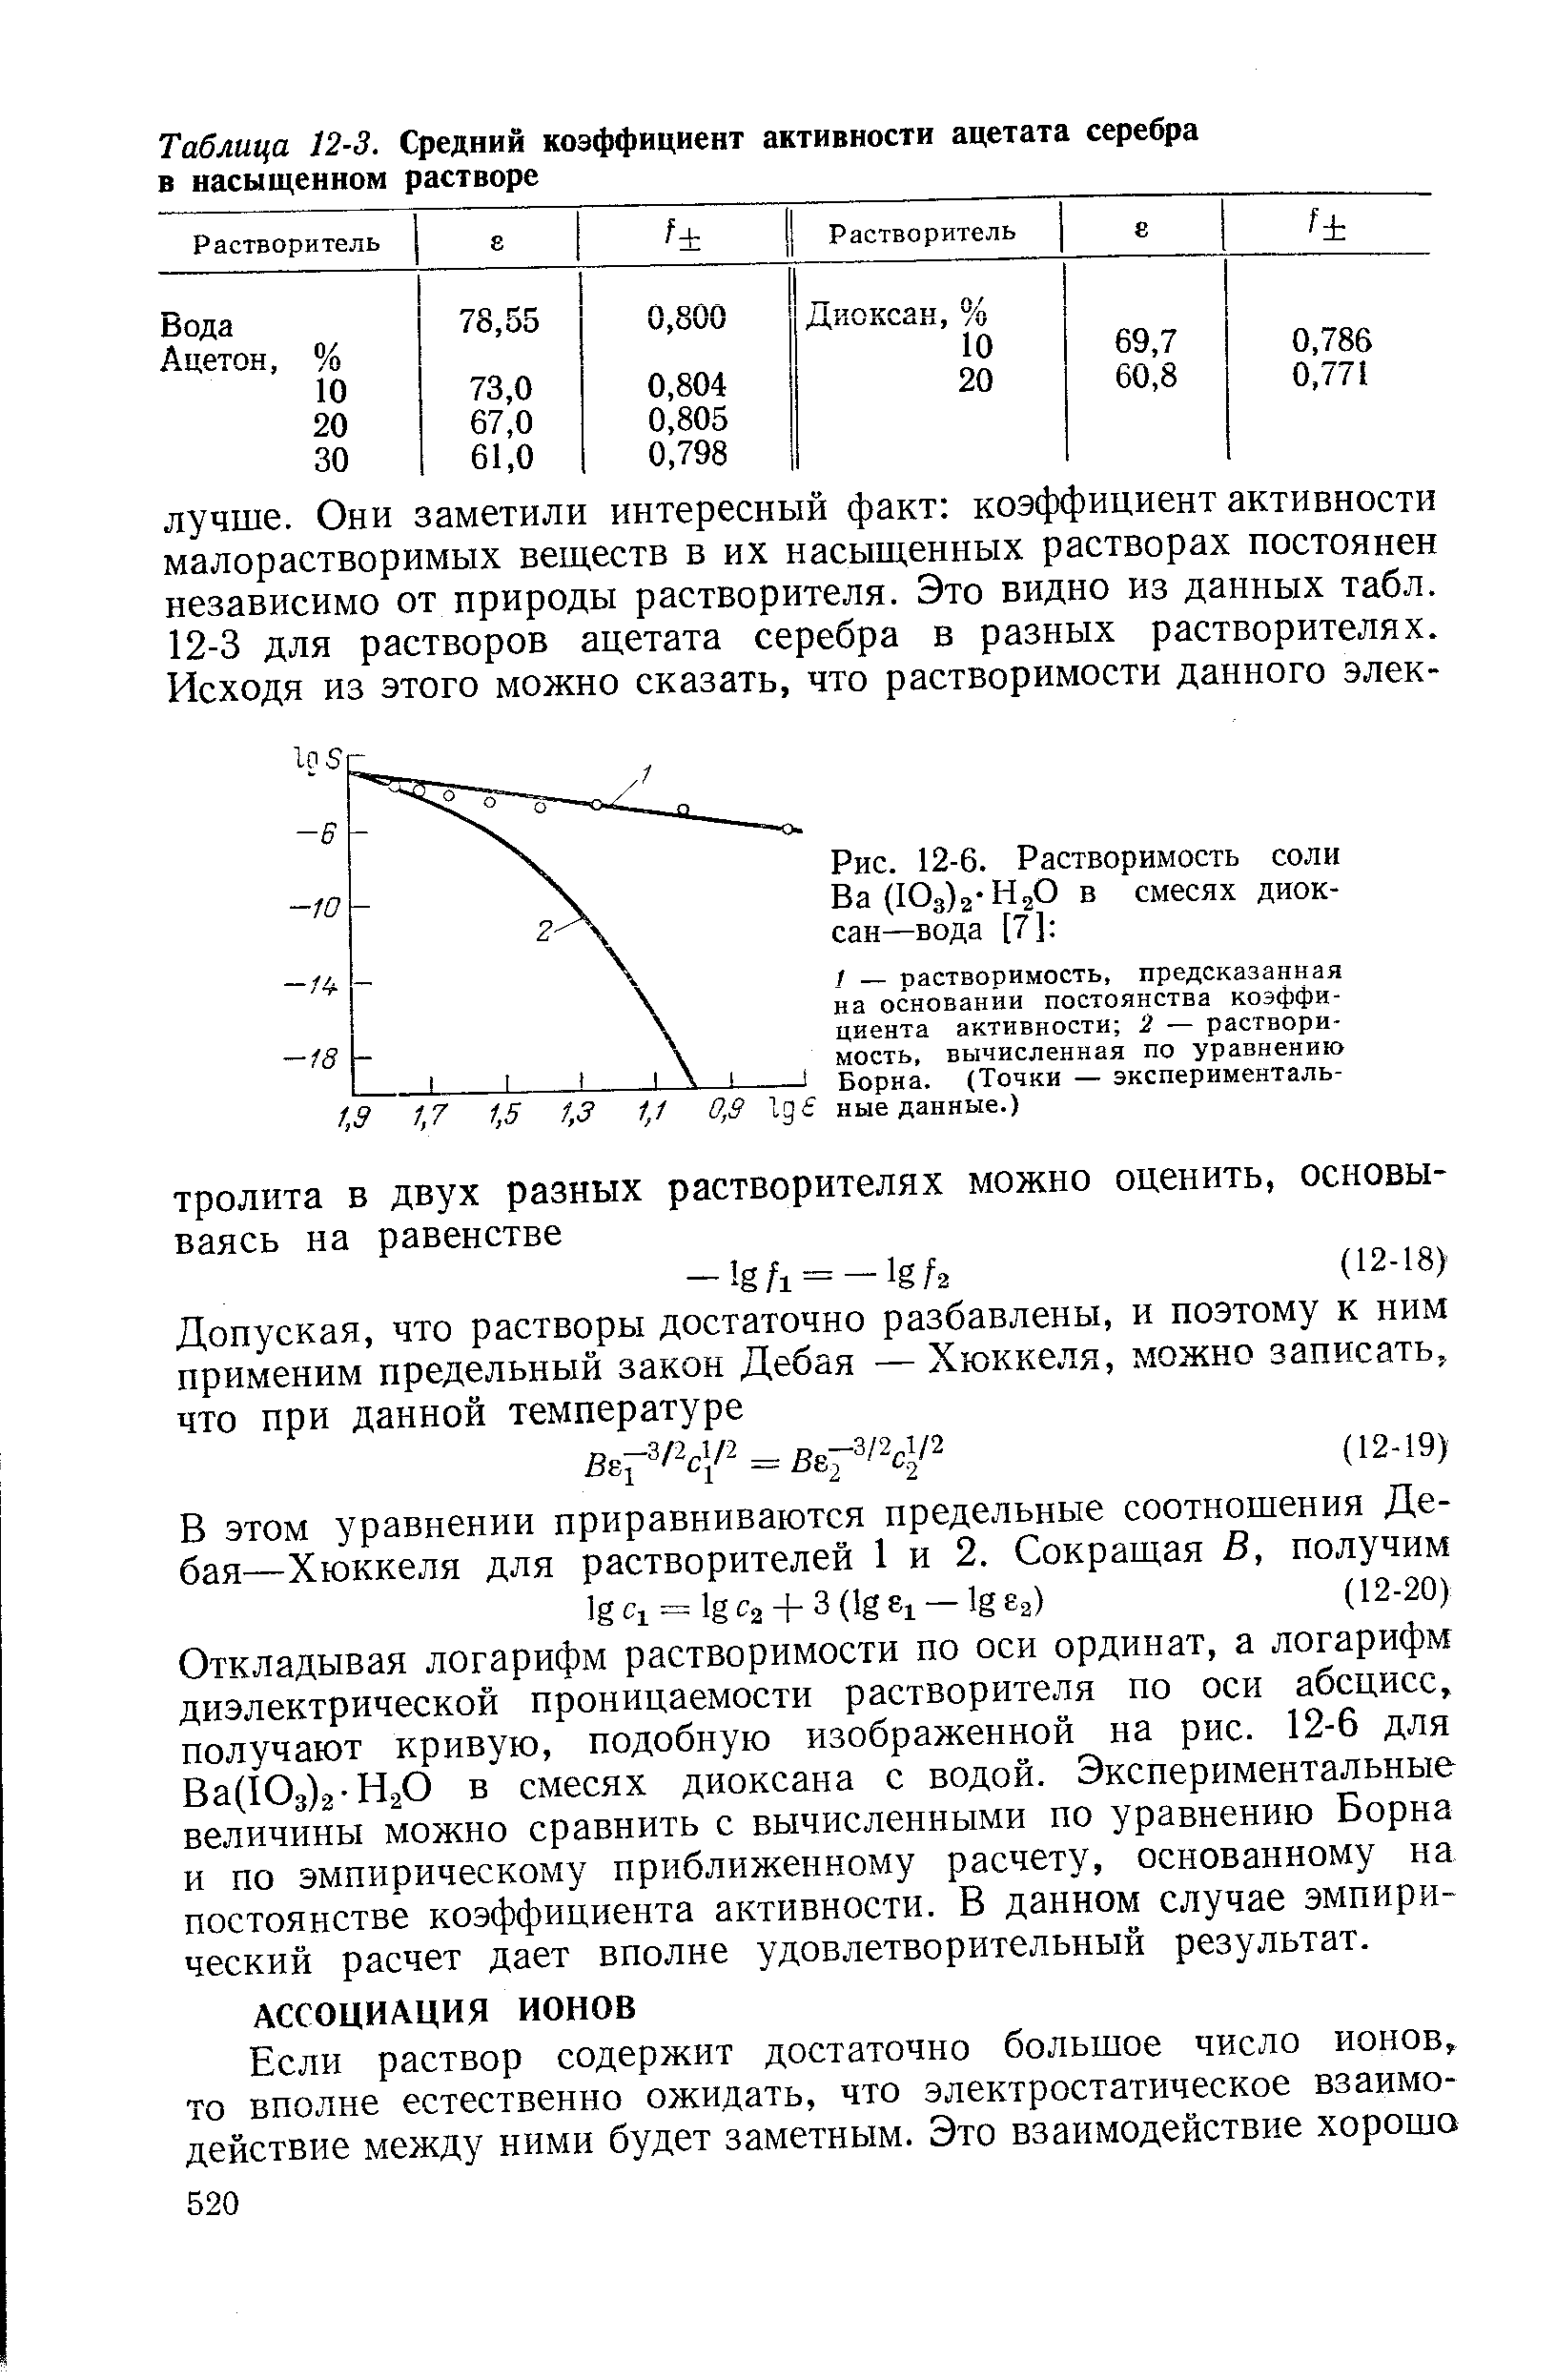 Откладывая логарифм растворимости по оси ординат, а логарифм диэлектрической проницаемости растворителя по оси абсцисс, получают кривую, подобную изображенной на рис. 12-6 для Ва(Юз)2-Н20 в смесях диоксана с водой. Экспериментальные величины можно сравнить с вычисленными по уравнению Борна и по эмпирическому приближенному расчету, основанному на постоянстве коэффициента активности. В данном случае эмпирический расчет дает вполне удовлетворительный результат.